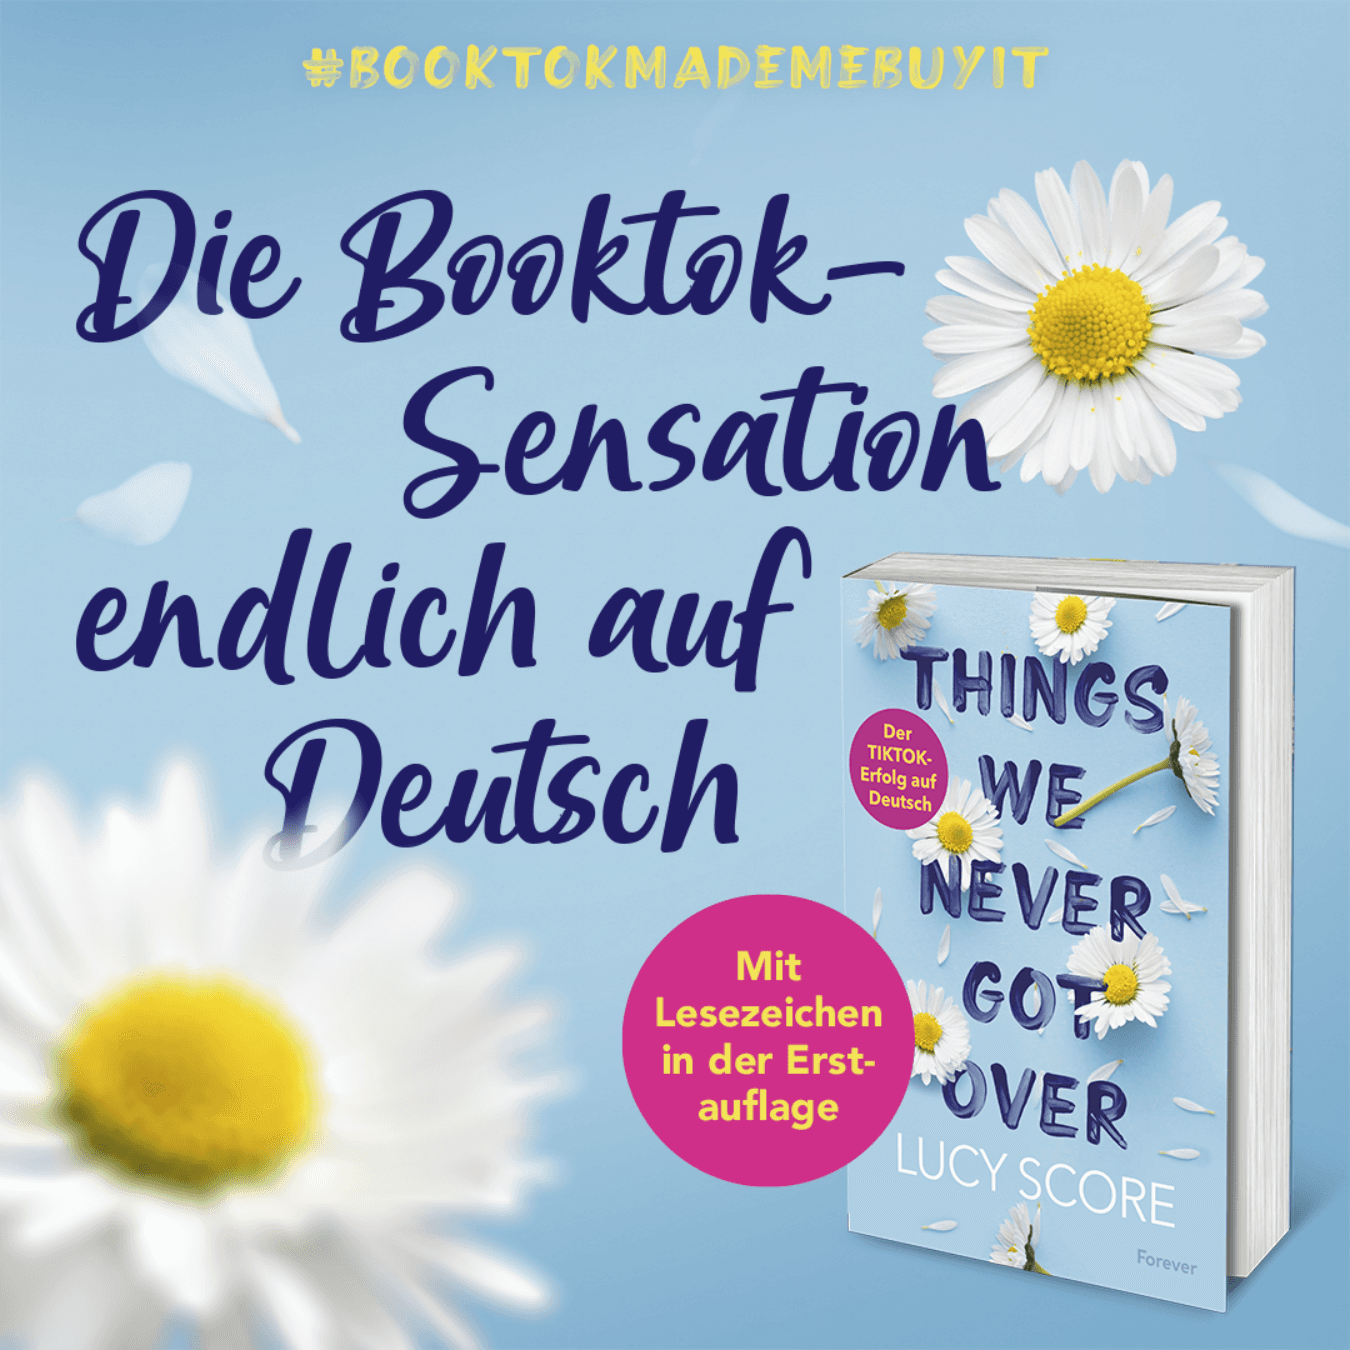 Die BookTok Sensation "Things We Never Got Over" von Lucy Score endlich auf Deutsch!